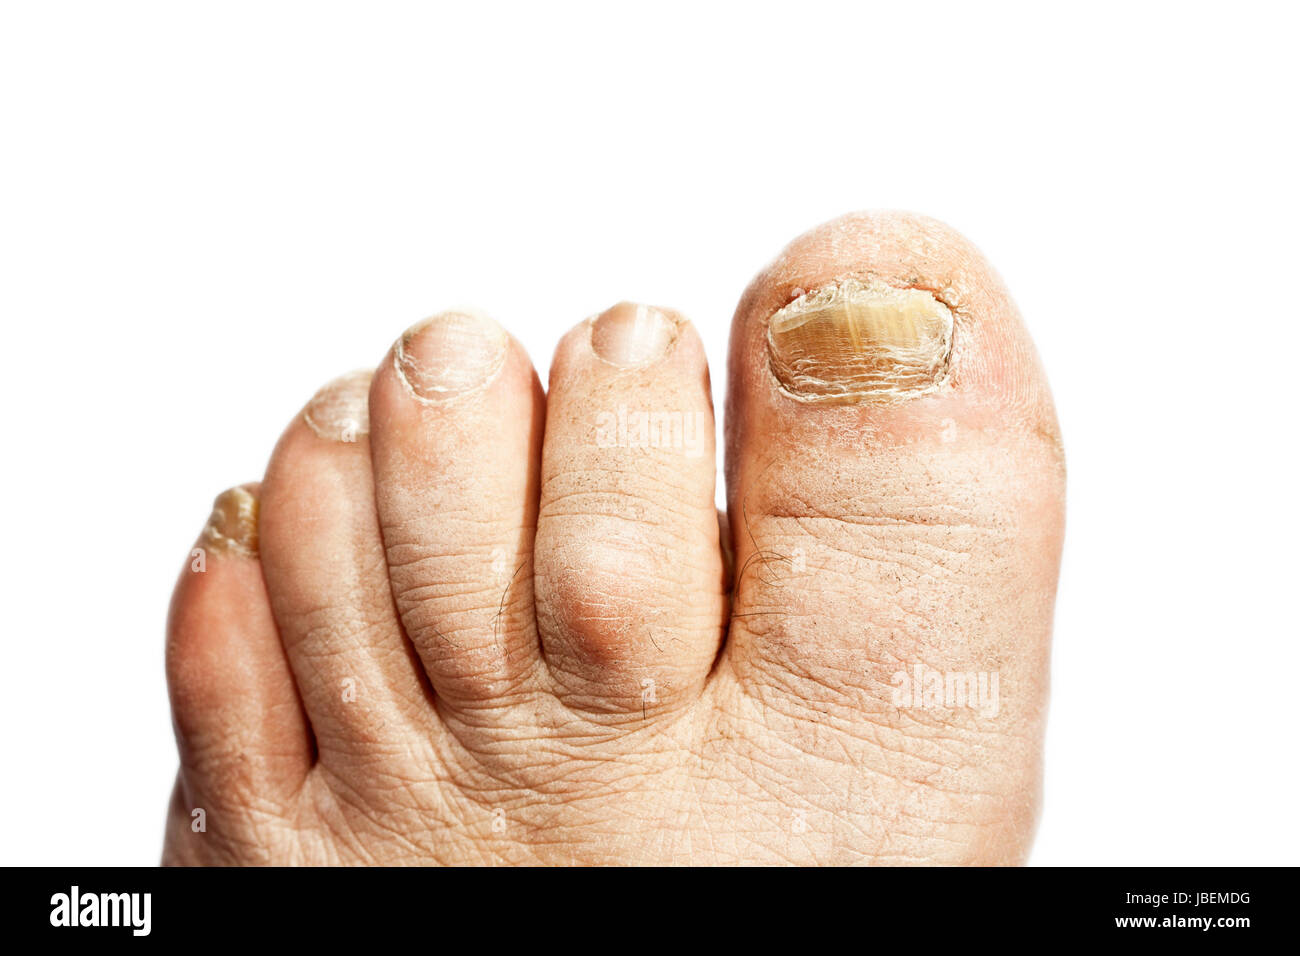 L'infection à champignon sur les ongles de pied de l'homme Banque D'Images